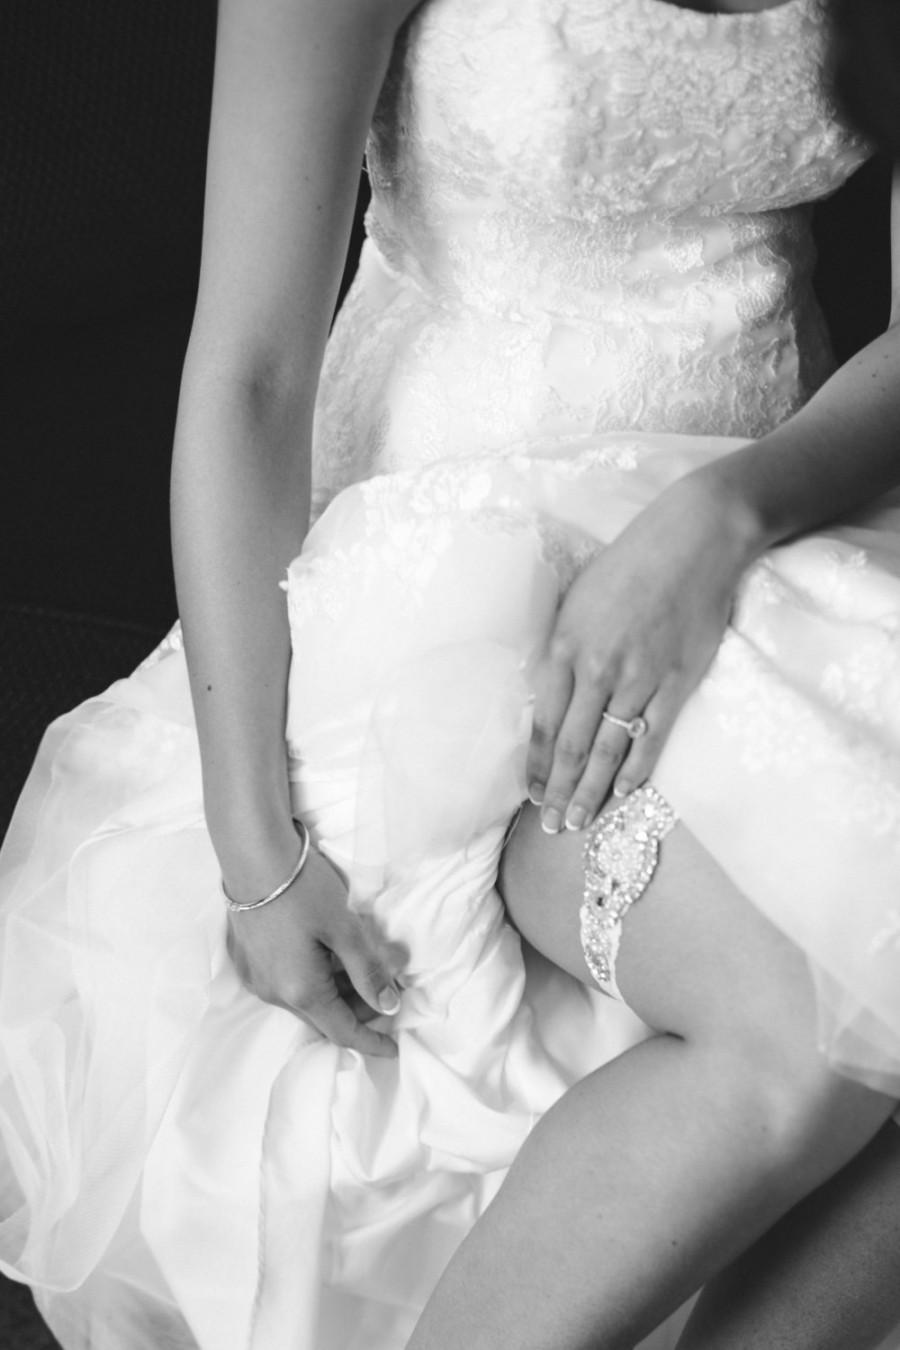 Mariage - Wedding Garter Set, Bridal Garter Set, Vintage Wedding, Ivory Lace Garter, Crystal Garter Set  - Style 600